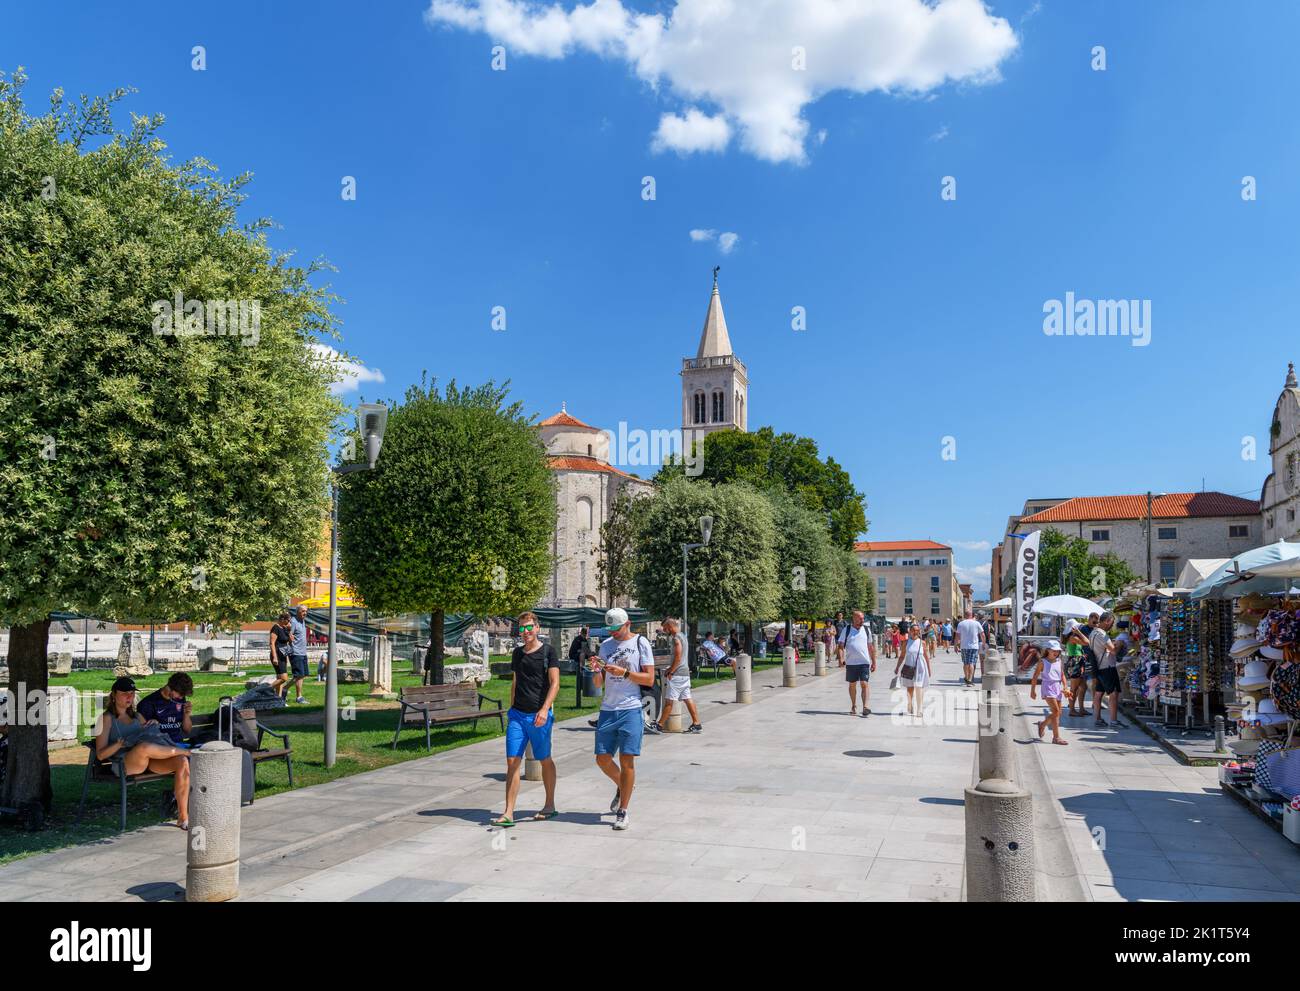 Das Forum Romanum, der Glockenturm der St. Anastasia Kathedrale und die St. Donatus Kirche im historischen Zentrum von Zadar, Kroatien Stockfoto